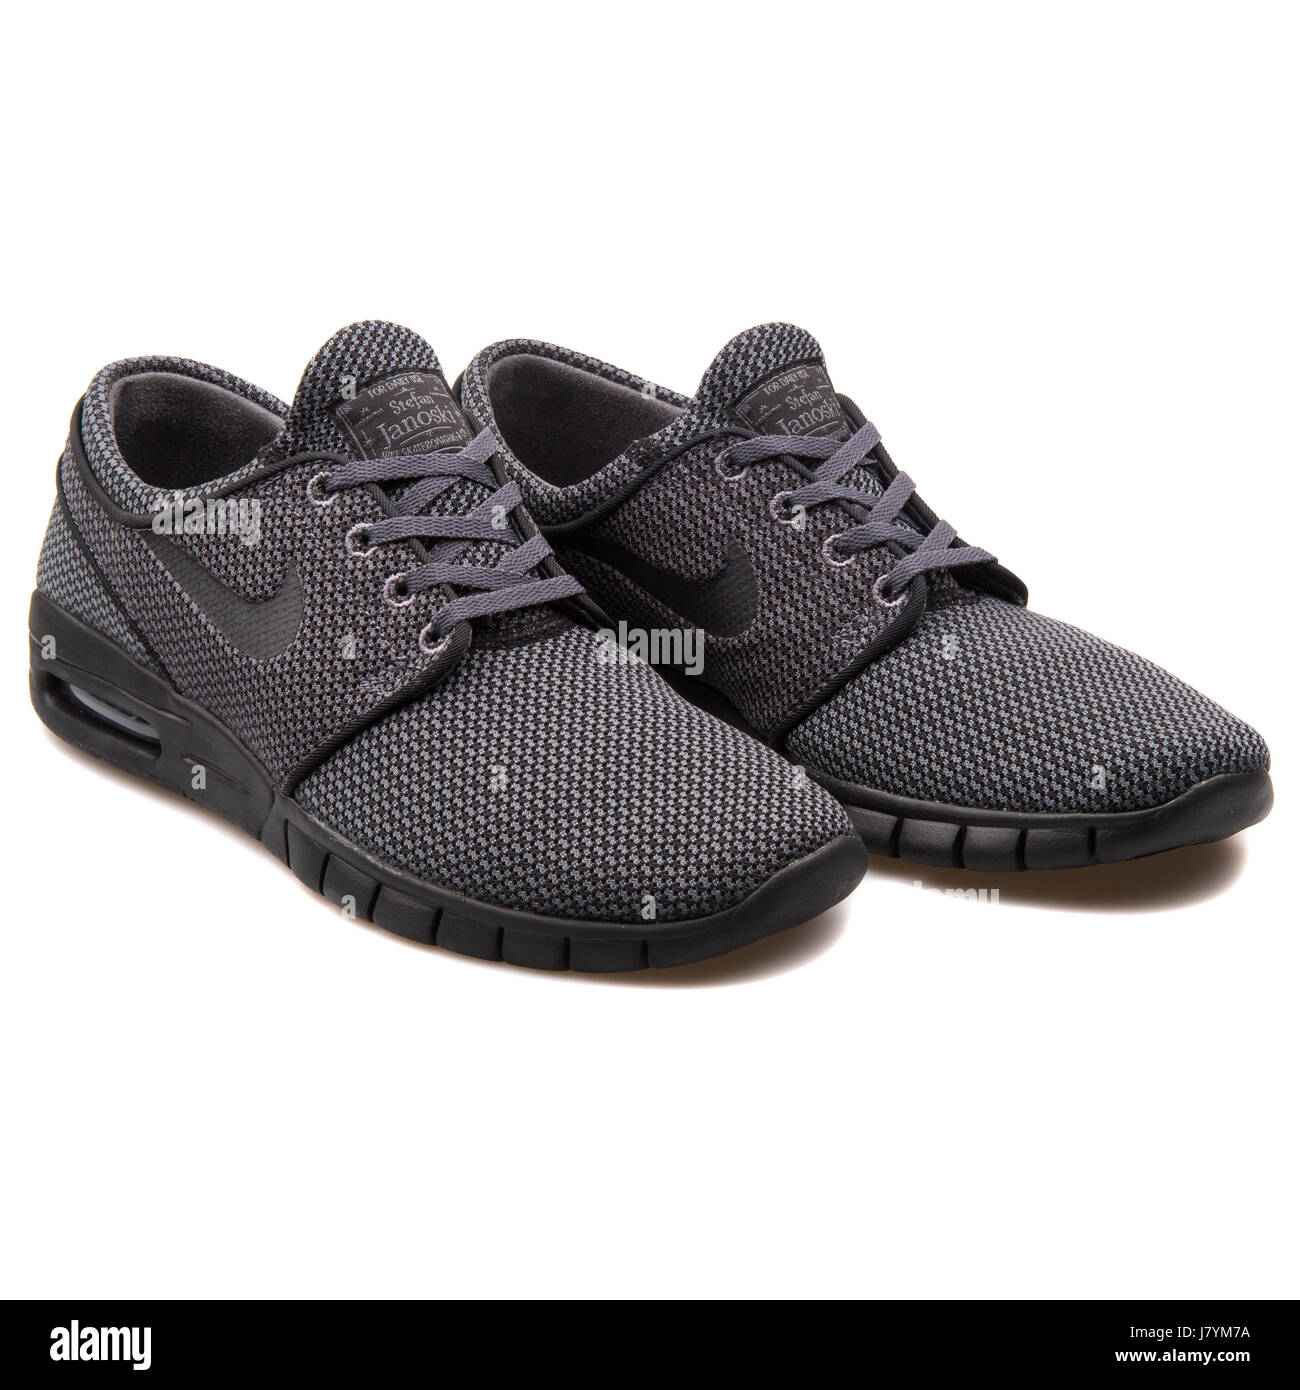 Stefan Janoski Nike Max chaussures de skate pour hommes noir - 631303-006  Photo Stock - Alamy